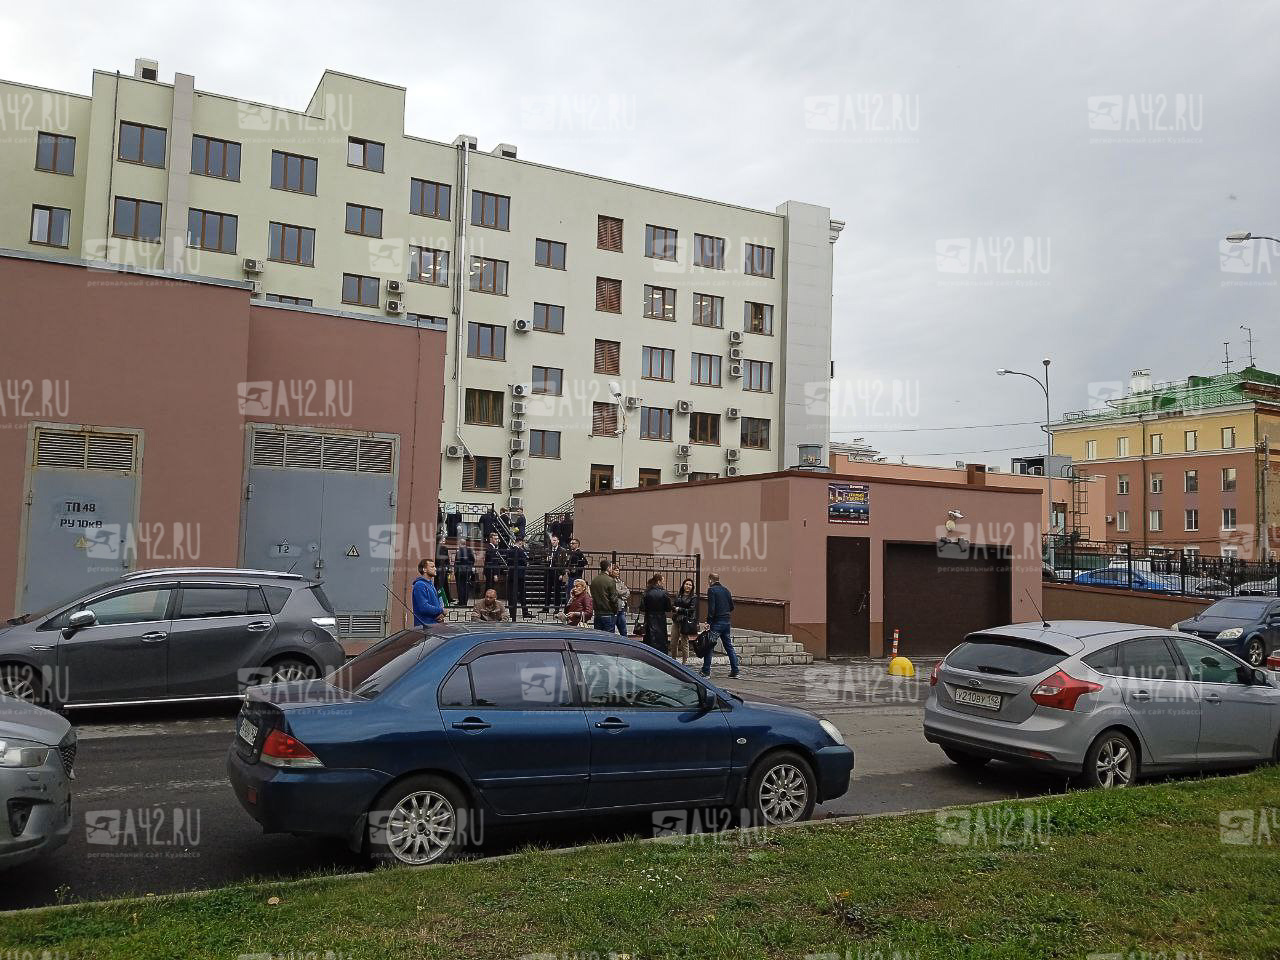 Очевидцы: в Кемерове эвакуировали посетителей бизнес-центра, автовокзала и университета из-за сообщений о минировании